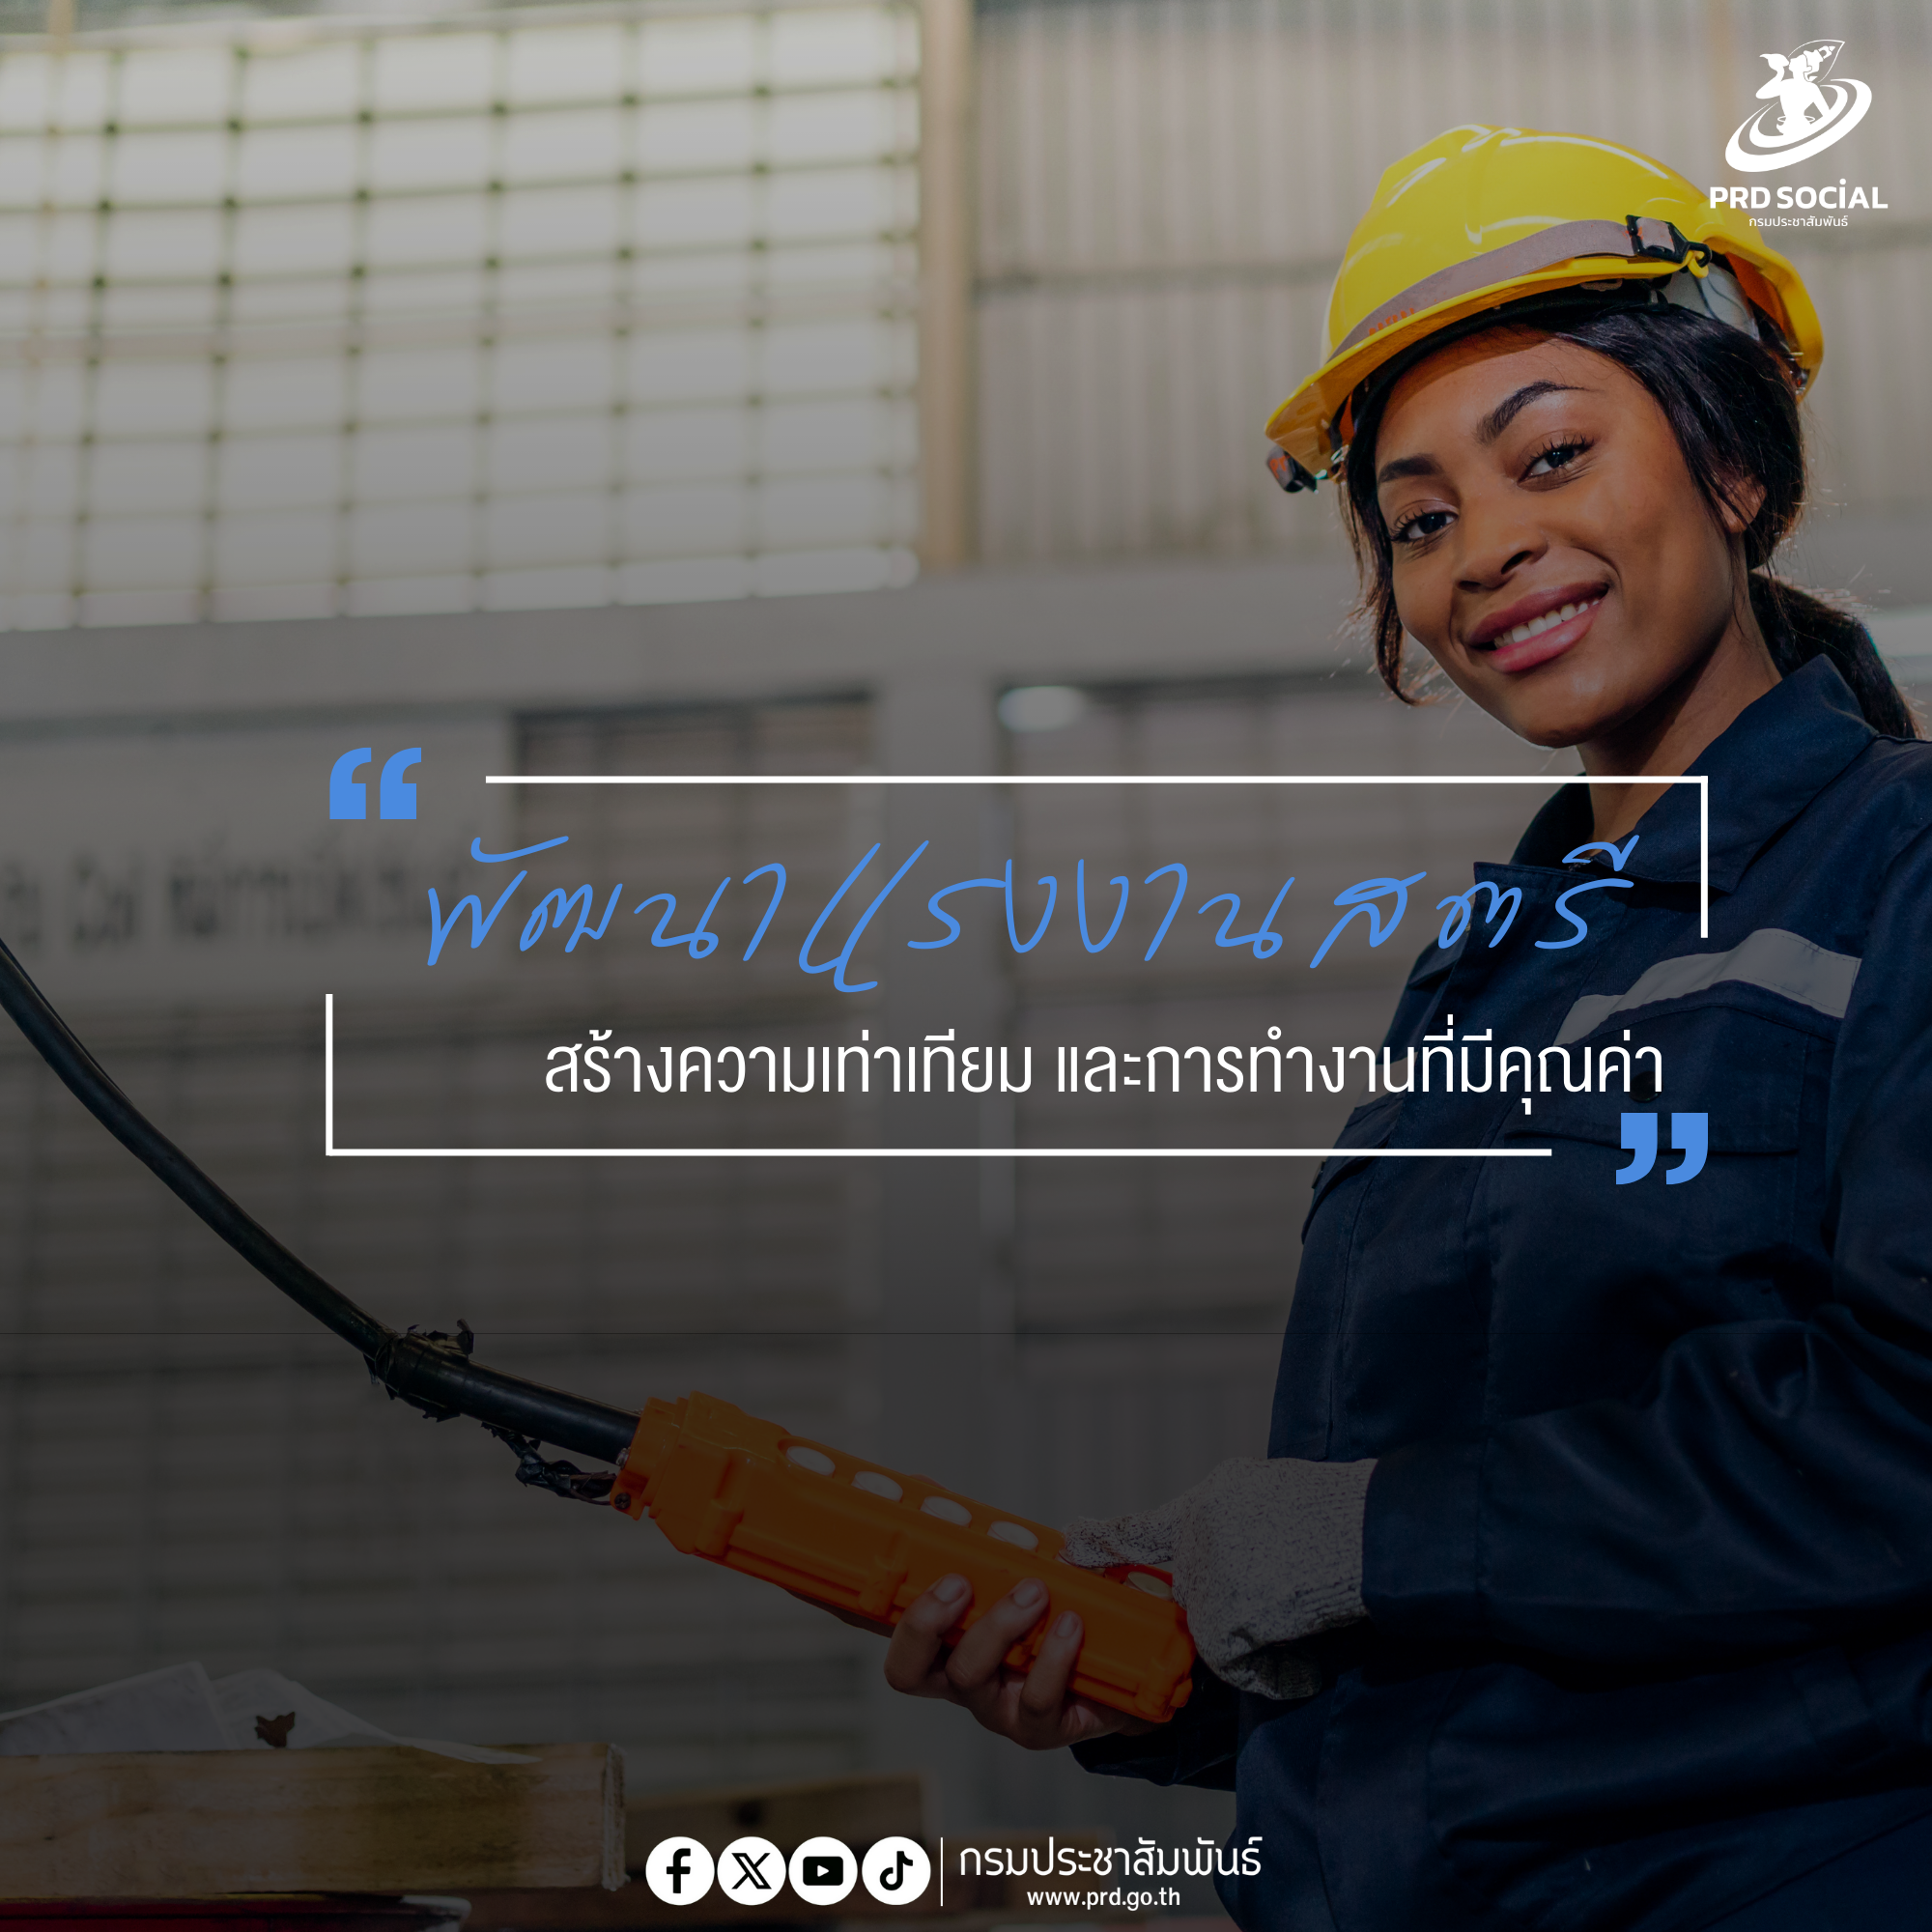 พัฒนาแรงงานสตรี สร้างความเท่าเทียม และการทำงานที่มีคุณค่า